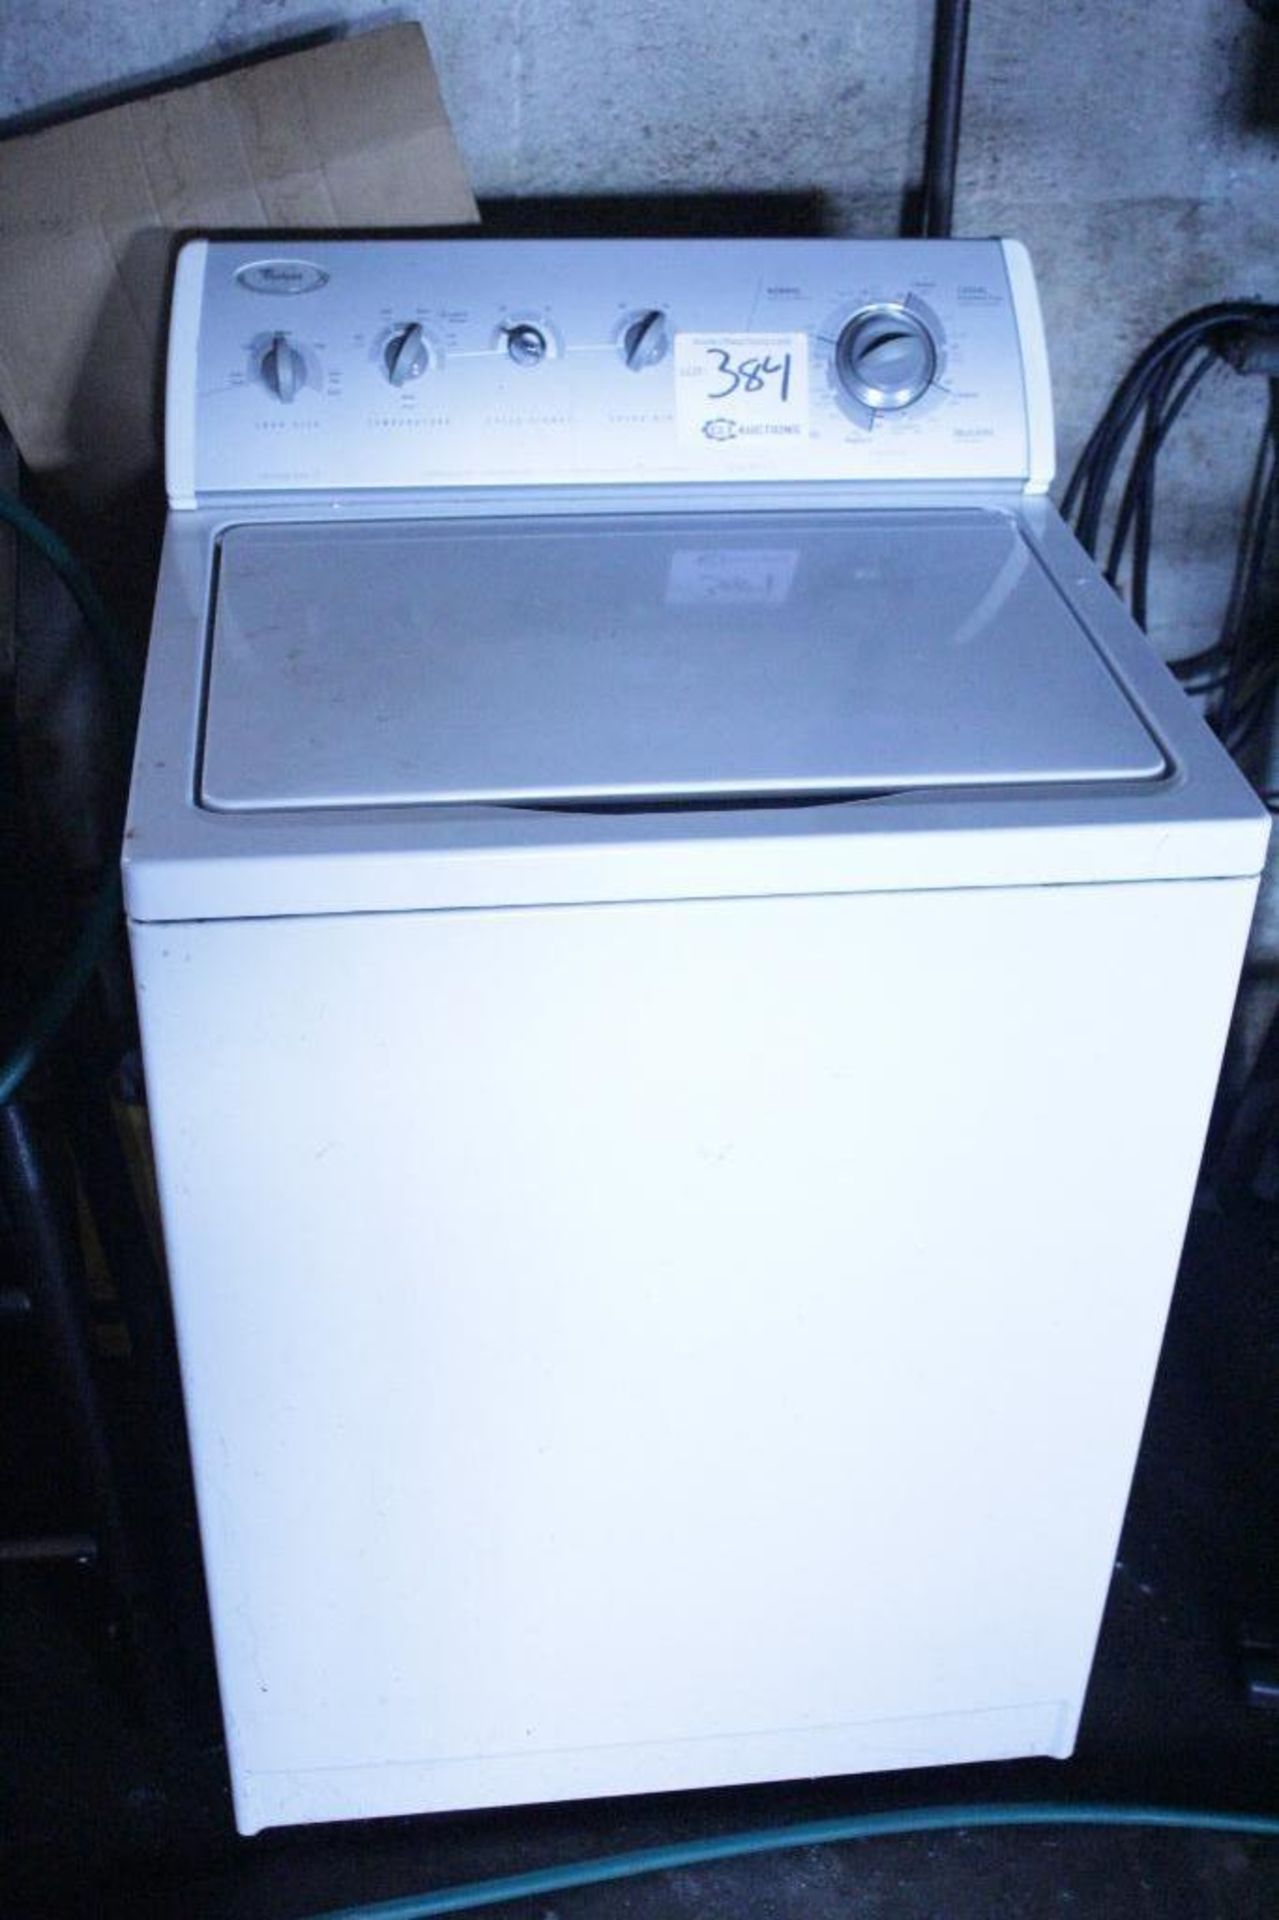 Whirlpool washing machine - Image 3 of 3